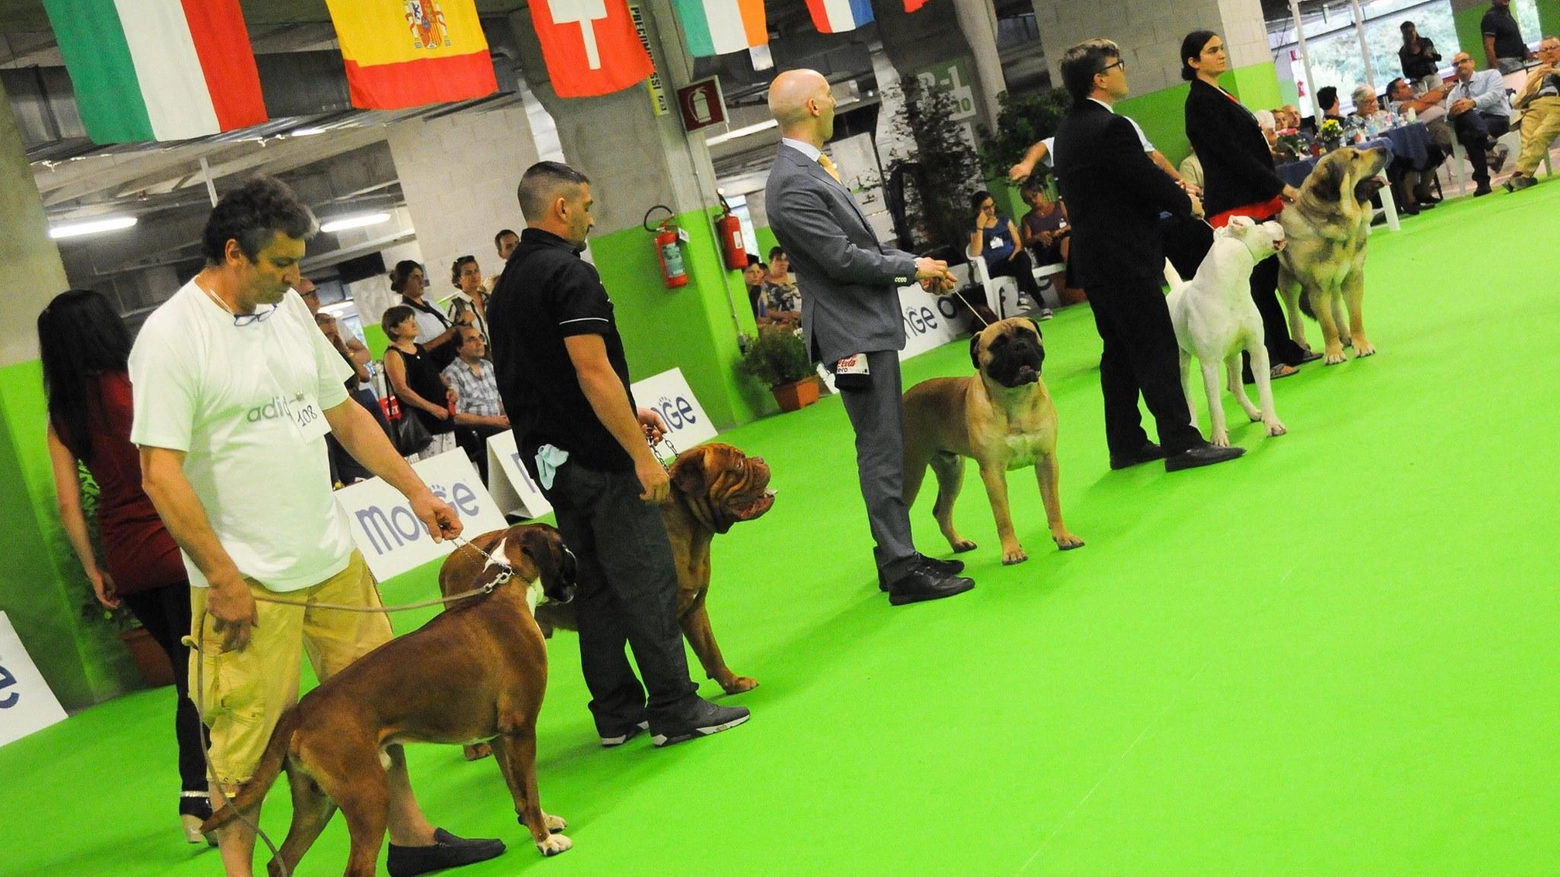 Esposizione internazionale canina  all’ippodromo del Visarno  Fra mille animali si sceglie il più bello